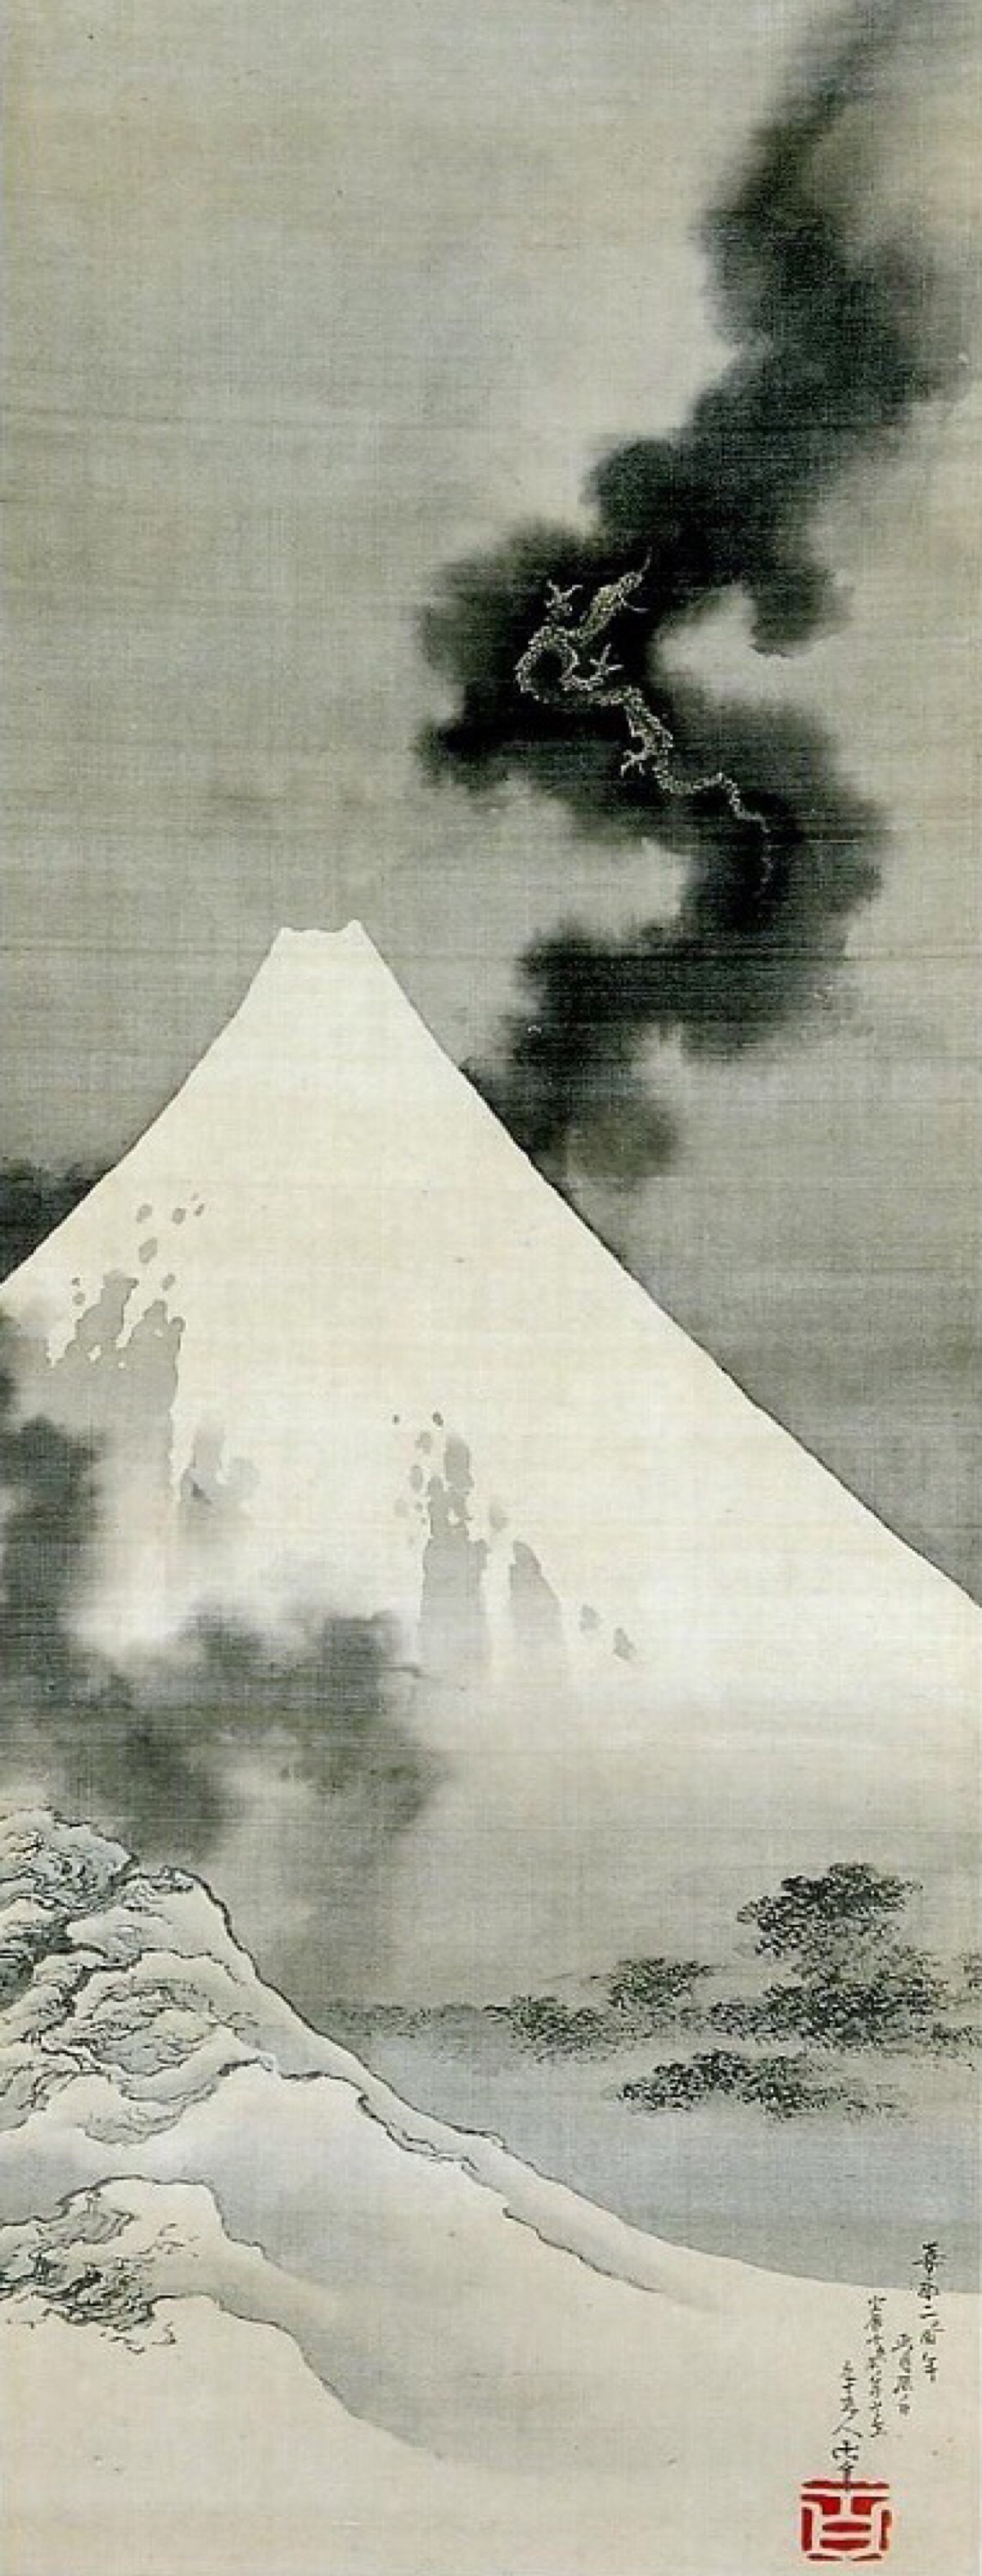 葛饰北斋去世前完成的最后一幅画作《富士越龙》